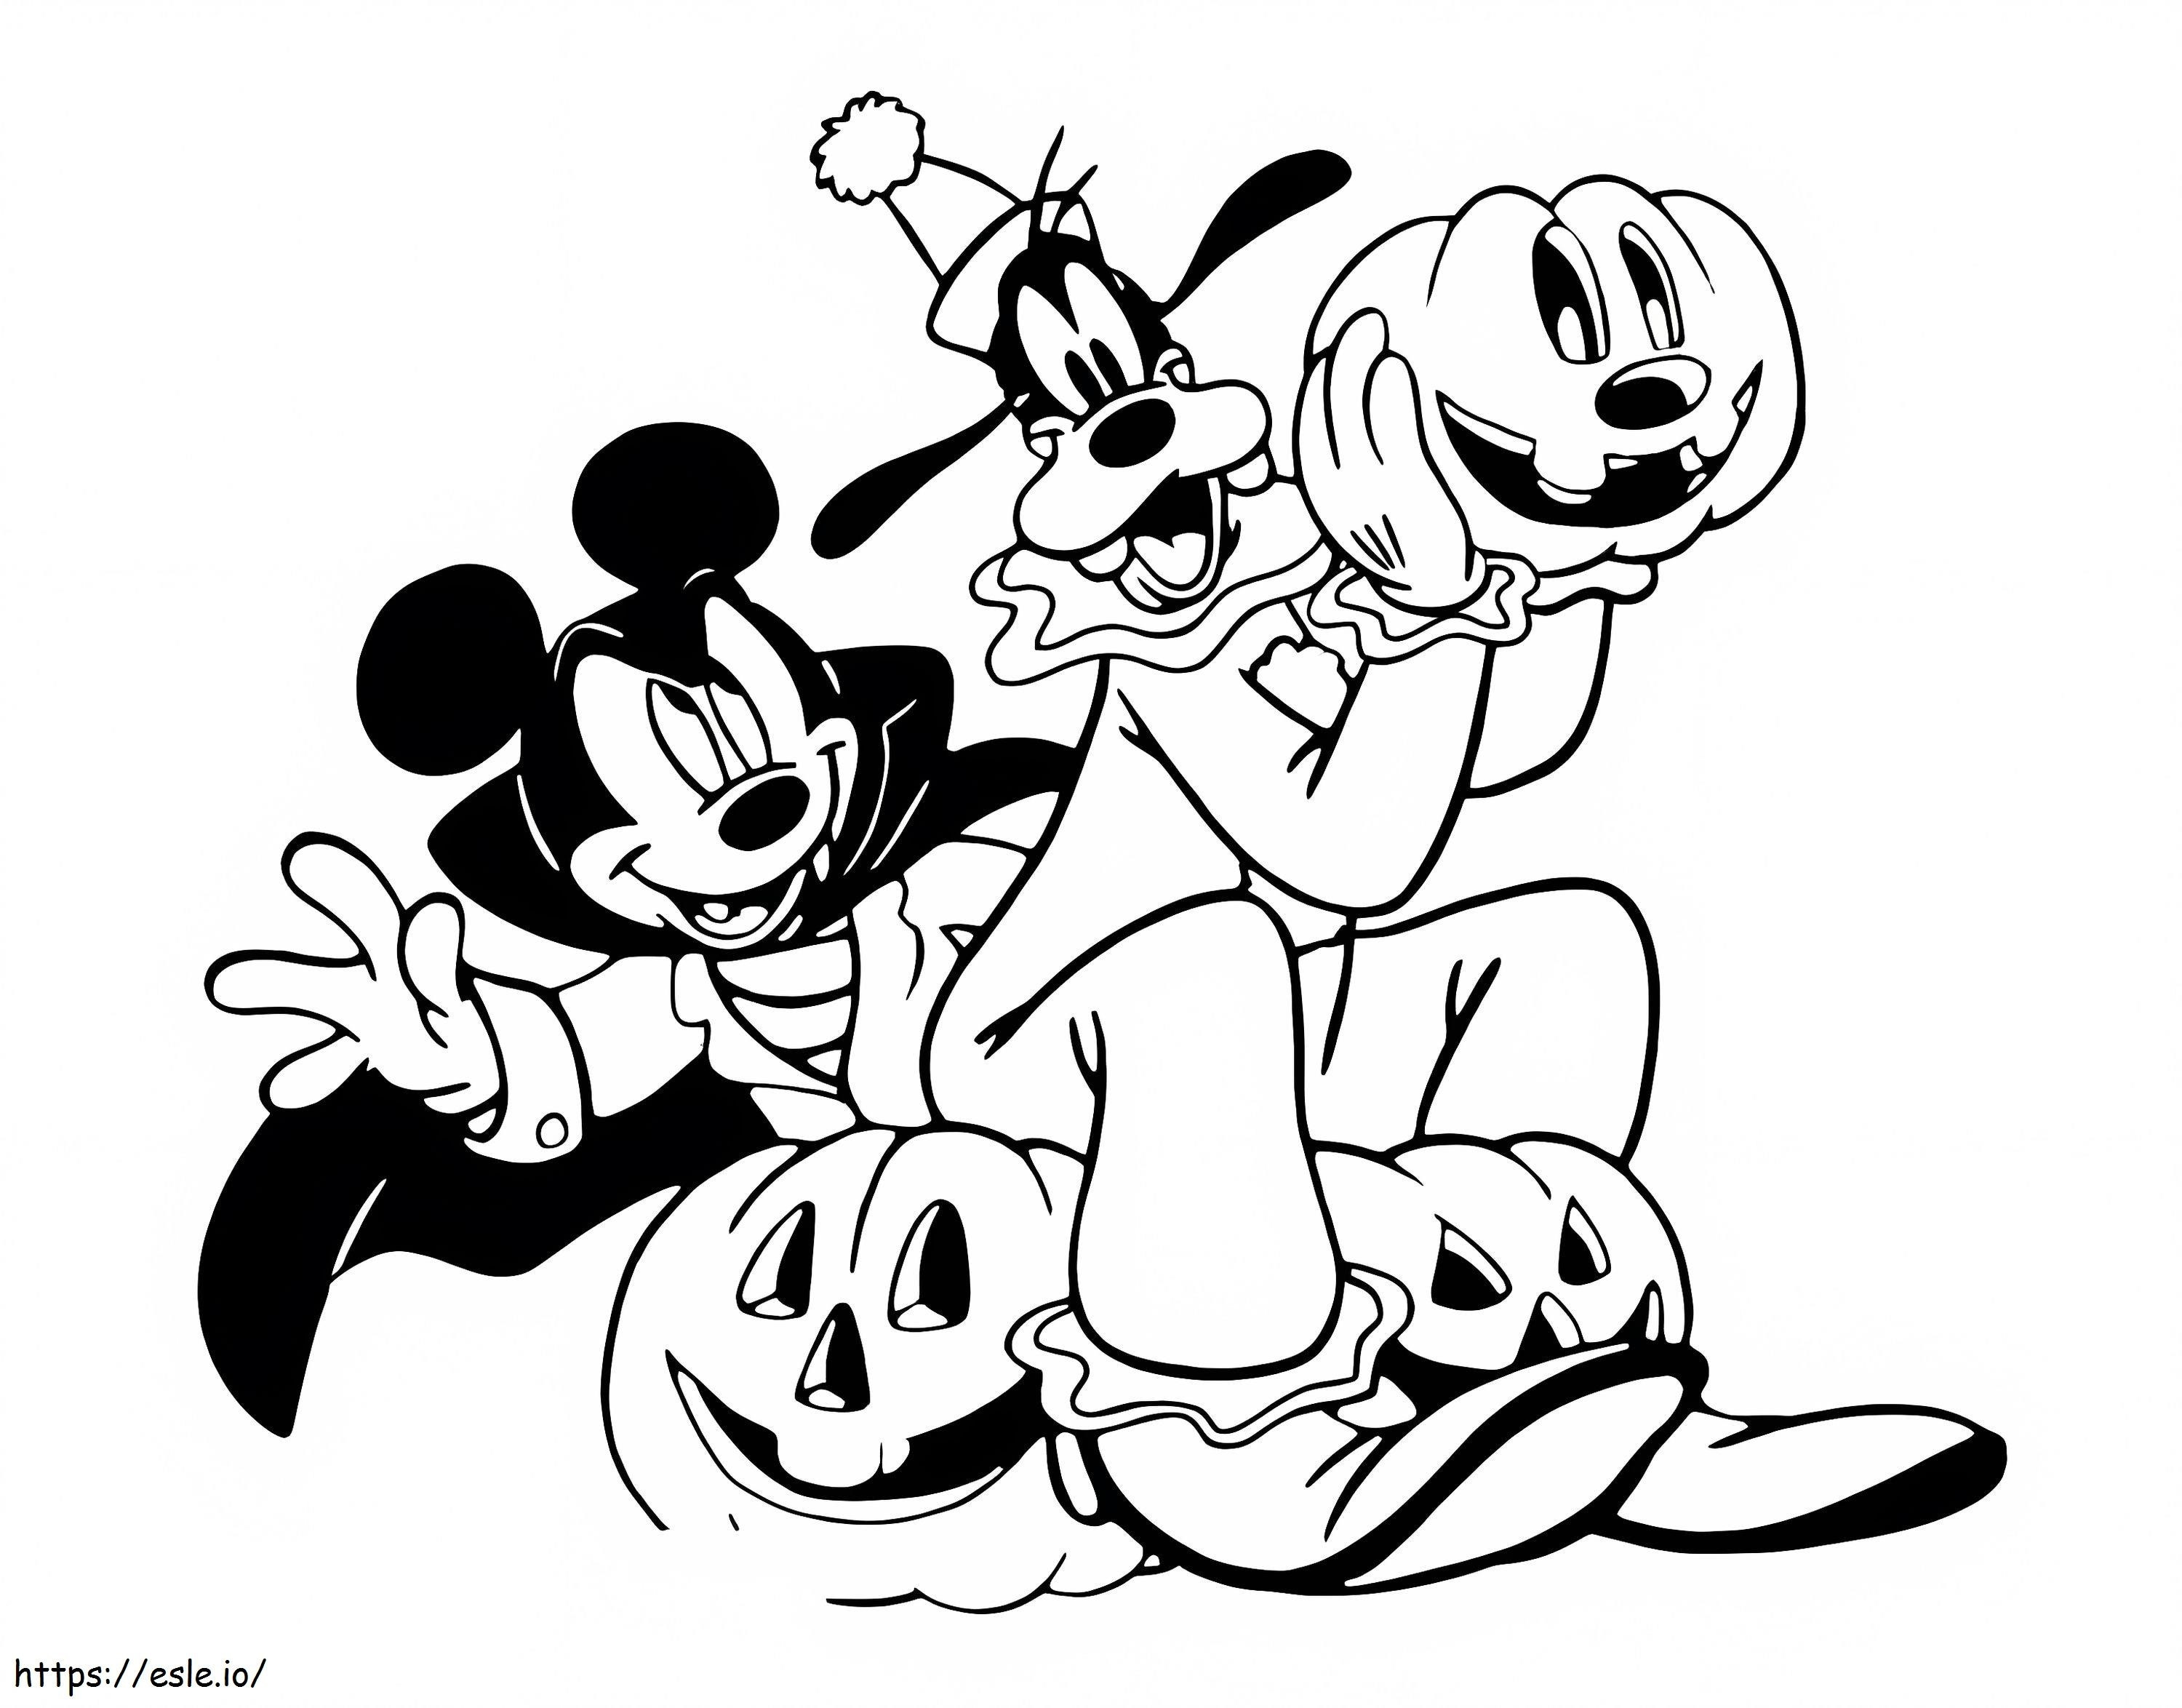 Mickey und Goofy an Halloween ausmalbilder